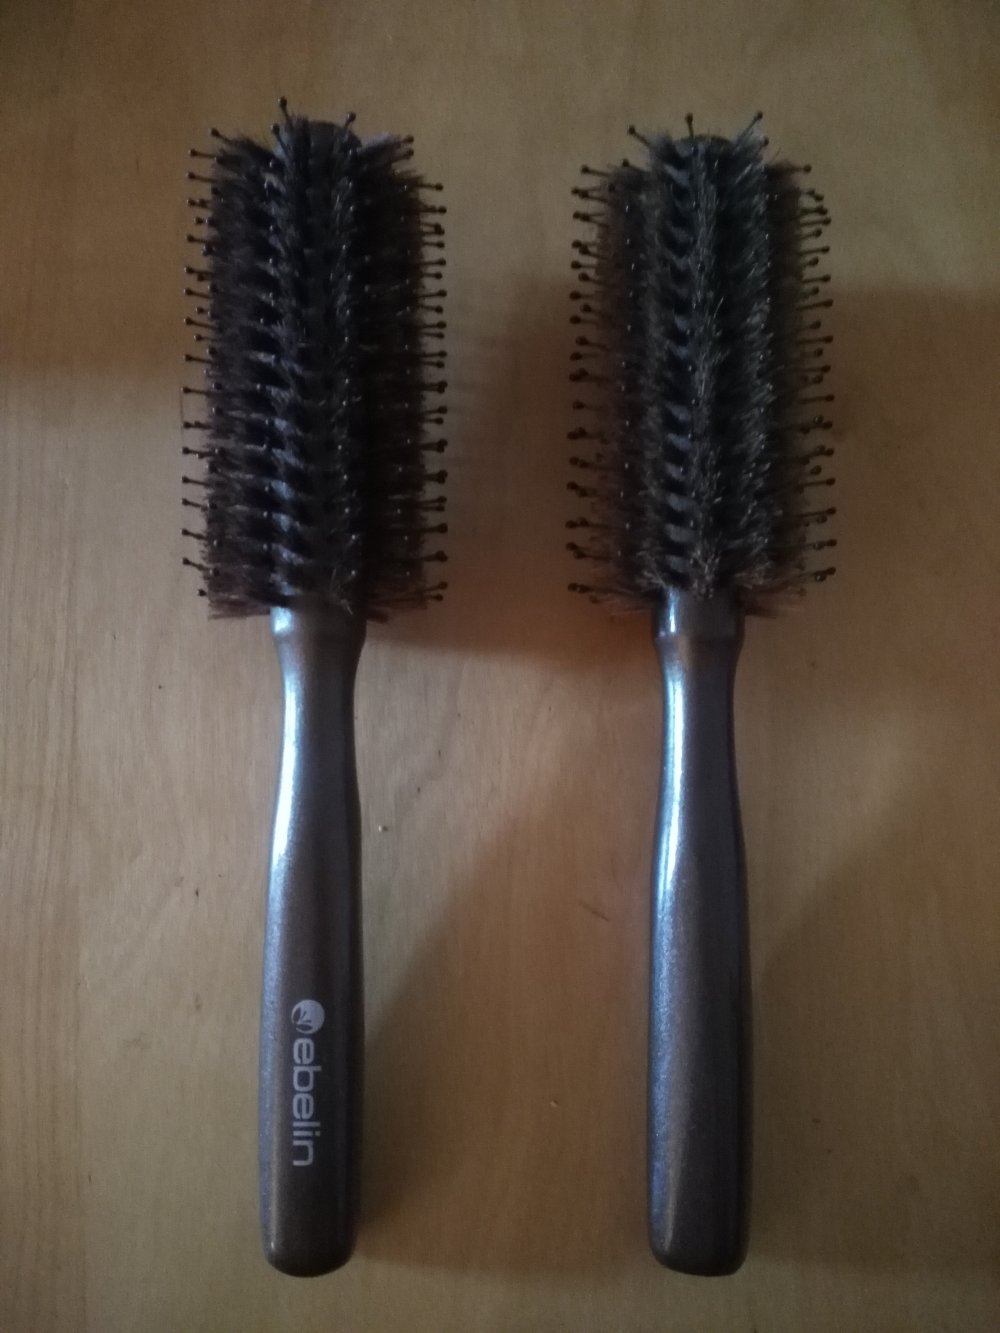 2 Haarbürsten Rundbürsten ca. 5cm Durchmesser, kurze und längere Borsten